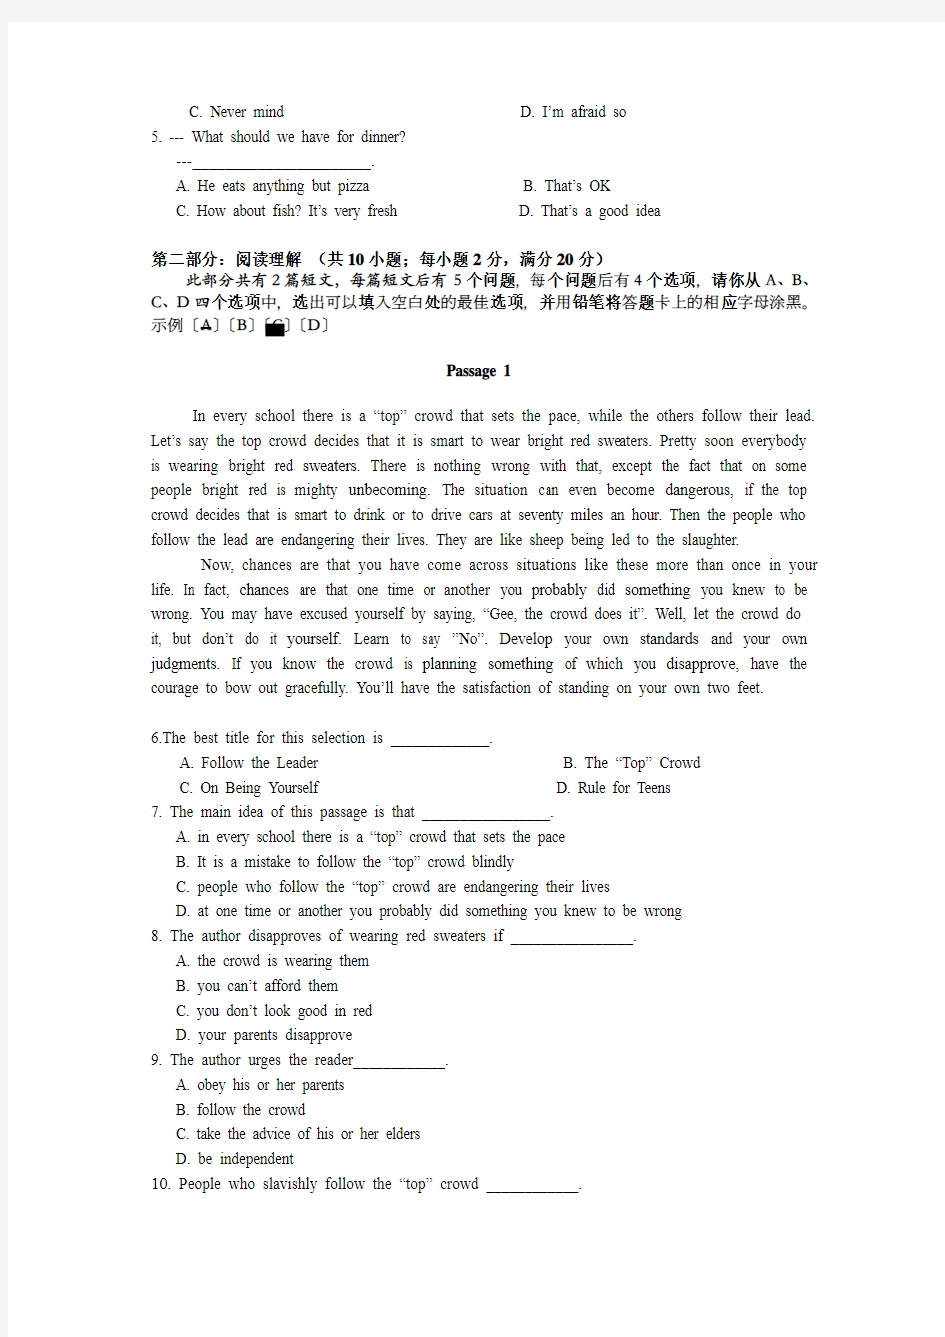 武汉理工大学网络教育学院大学入学考试复习资料英语1